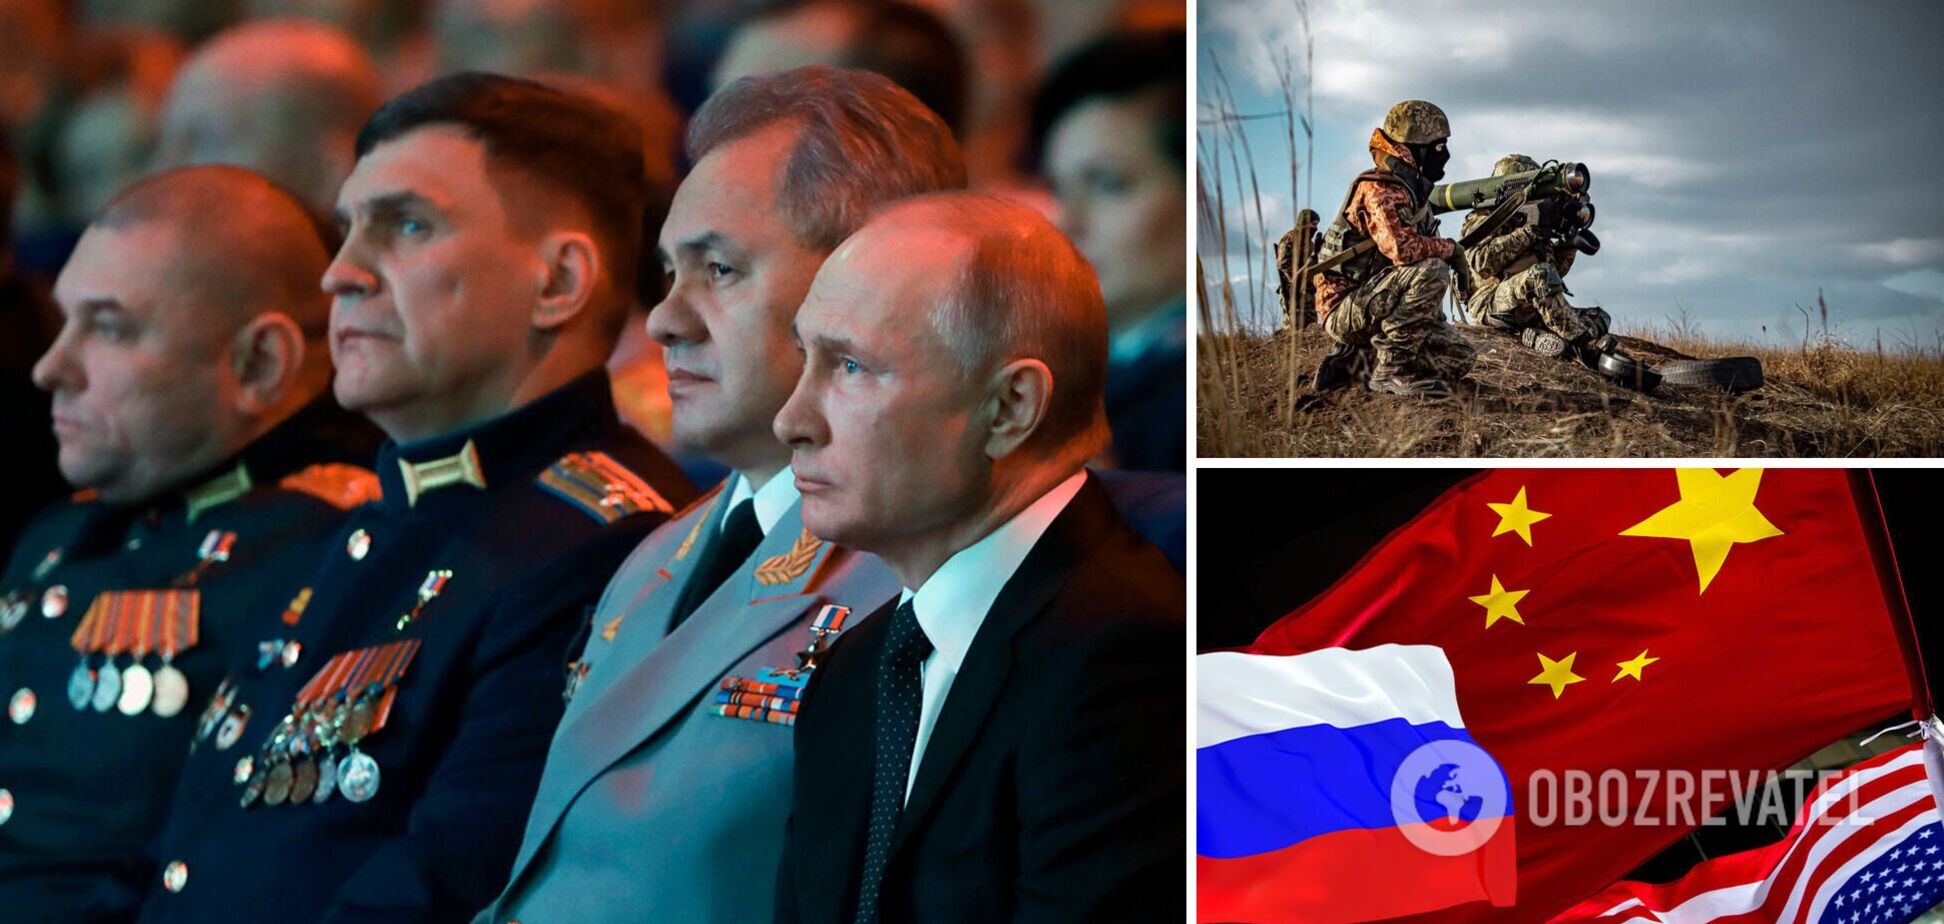 Український генерал: путінська Росія впаде Китаю на стіл, а Україна переможе. Інтерв’ю